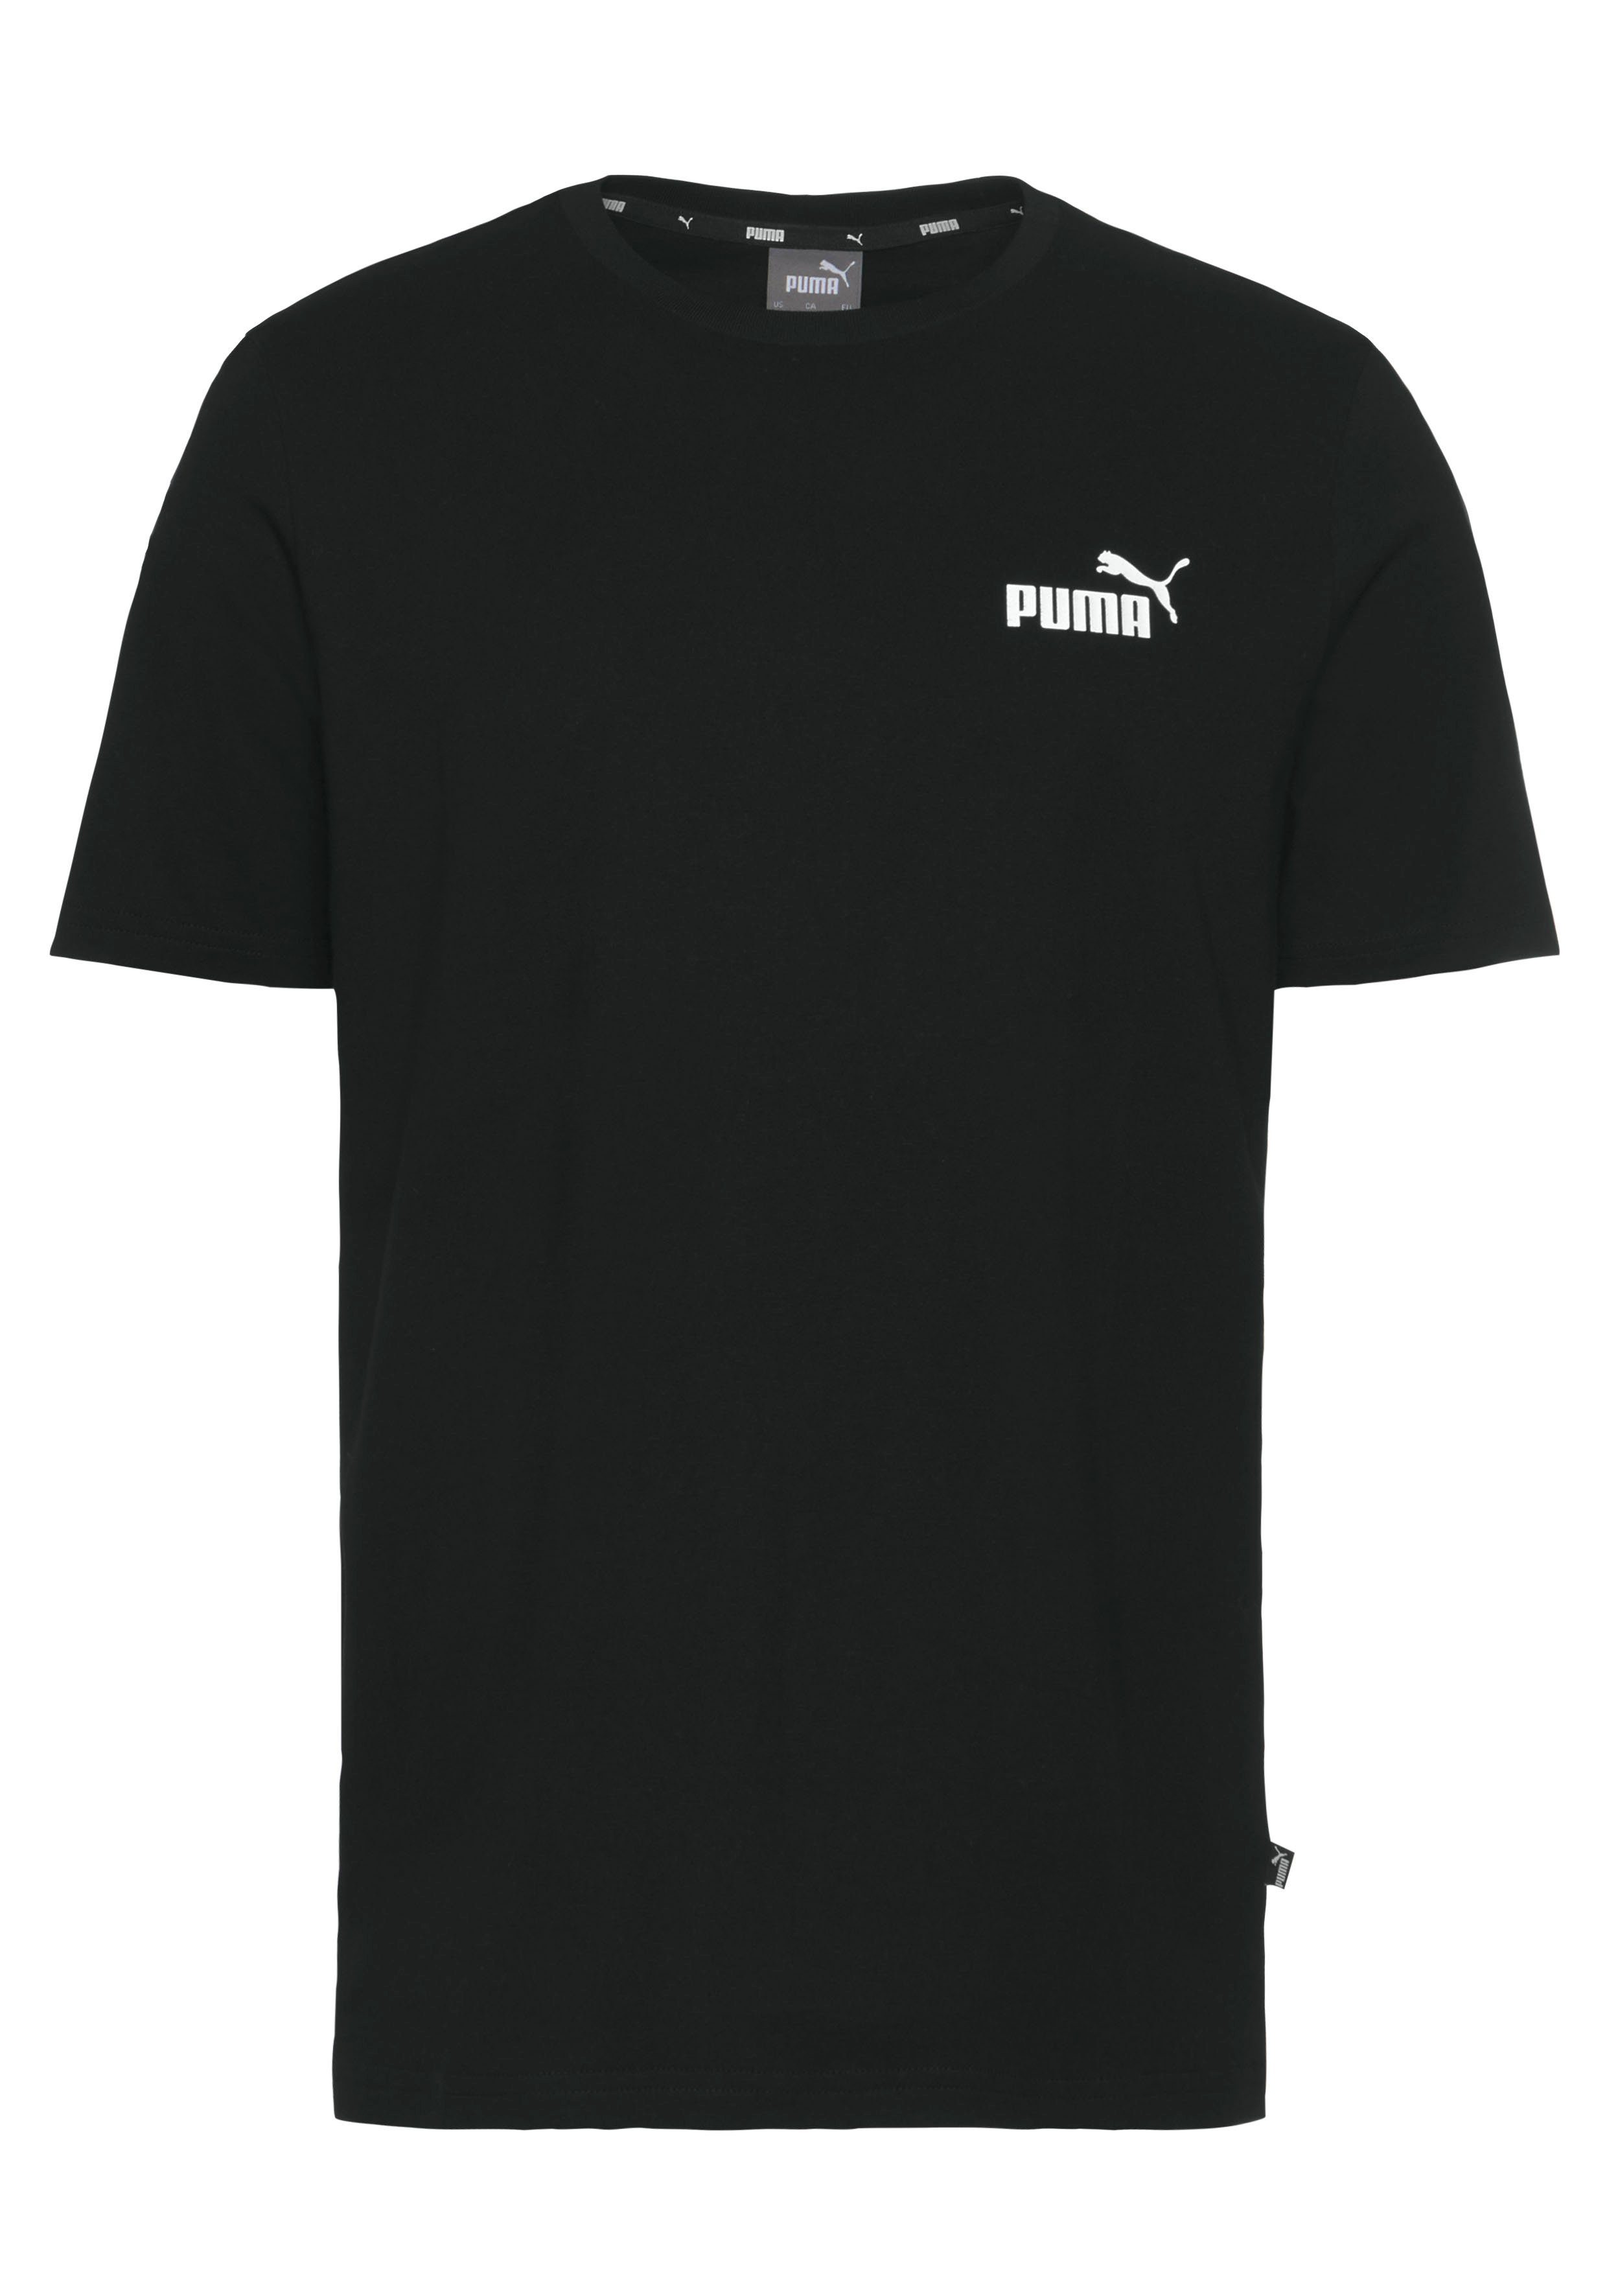 TAPE ESS+ PUMA Puma Black T-Shirt TEE